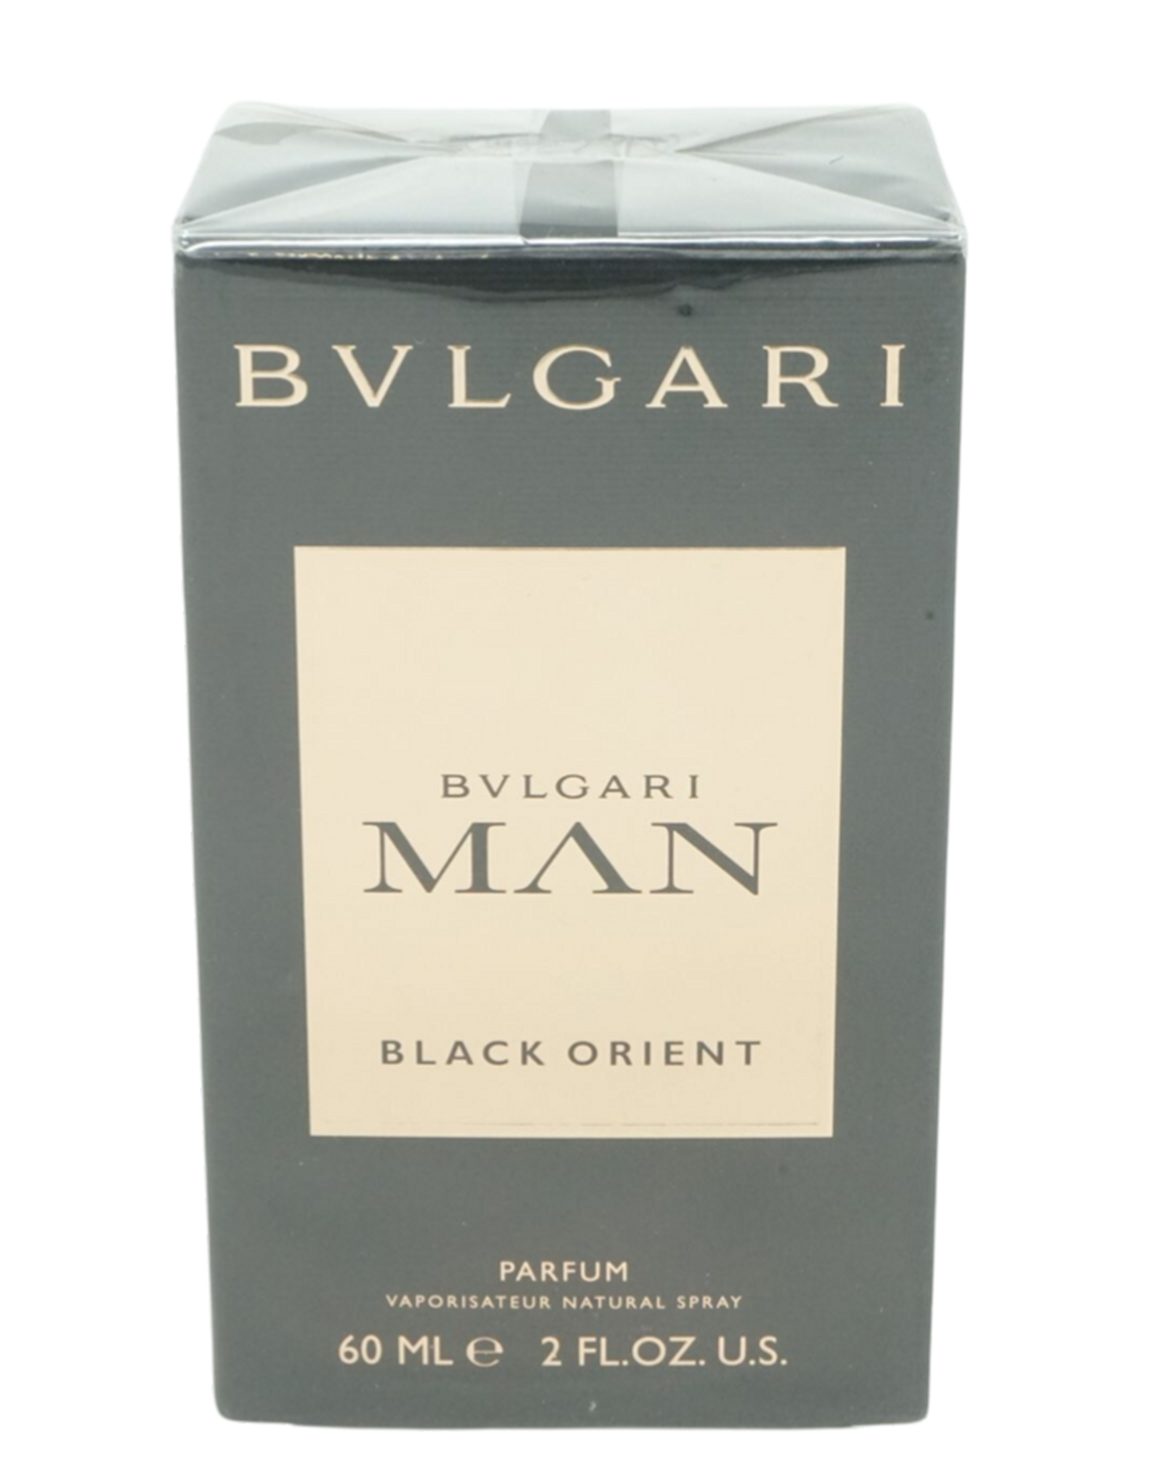 BVLGARI Gesichtslotion Bvlgari Man Black Orient Parfum Spray 60ml